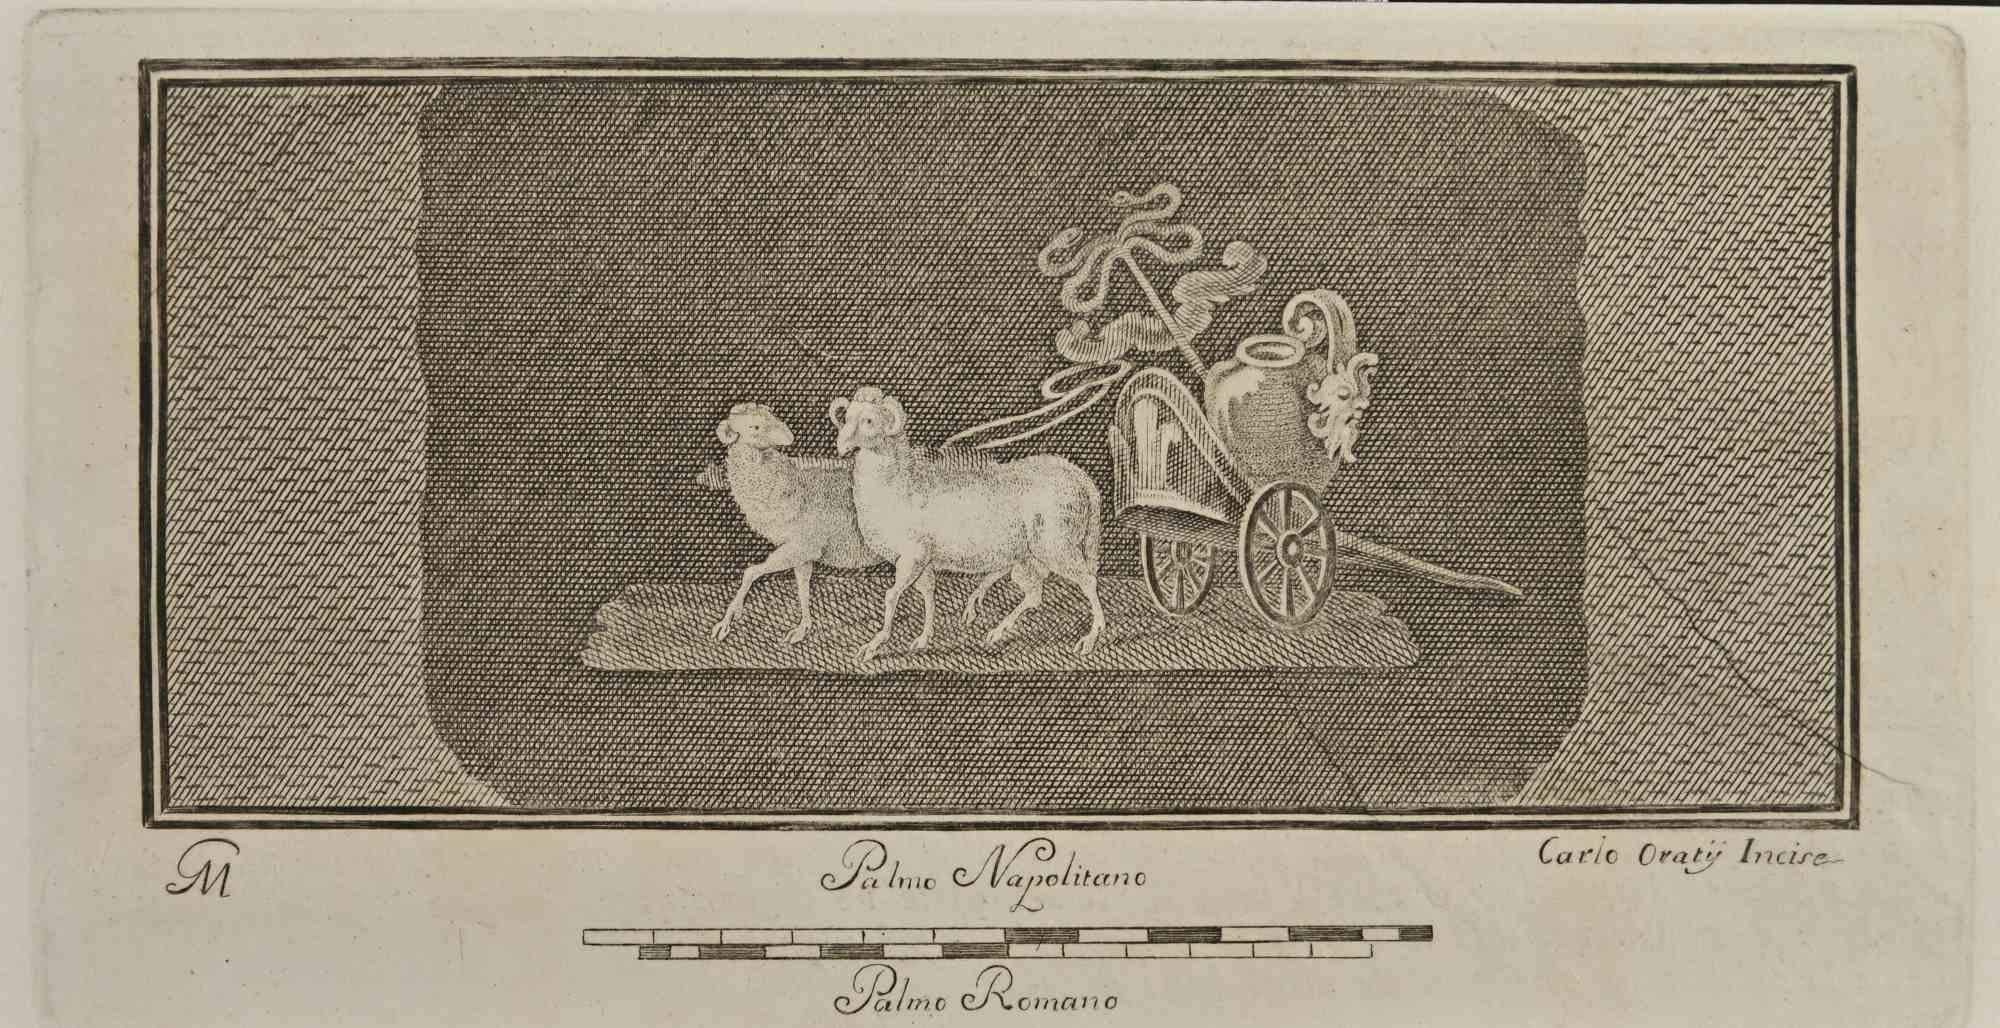 Das Widderwagen-Fresko aus den "Altertümern von Herculaneum" ist eine Radierung auf Papier von Carlo Oraty aus dem 18. Jahrhundert.

Signiert auf der Platte.

Guter Zustand mit einigen Faltungen.

Die Radierung gehört zu der Druckserie "Antiquities